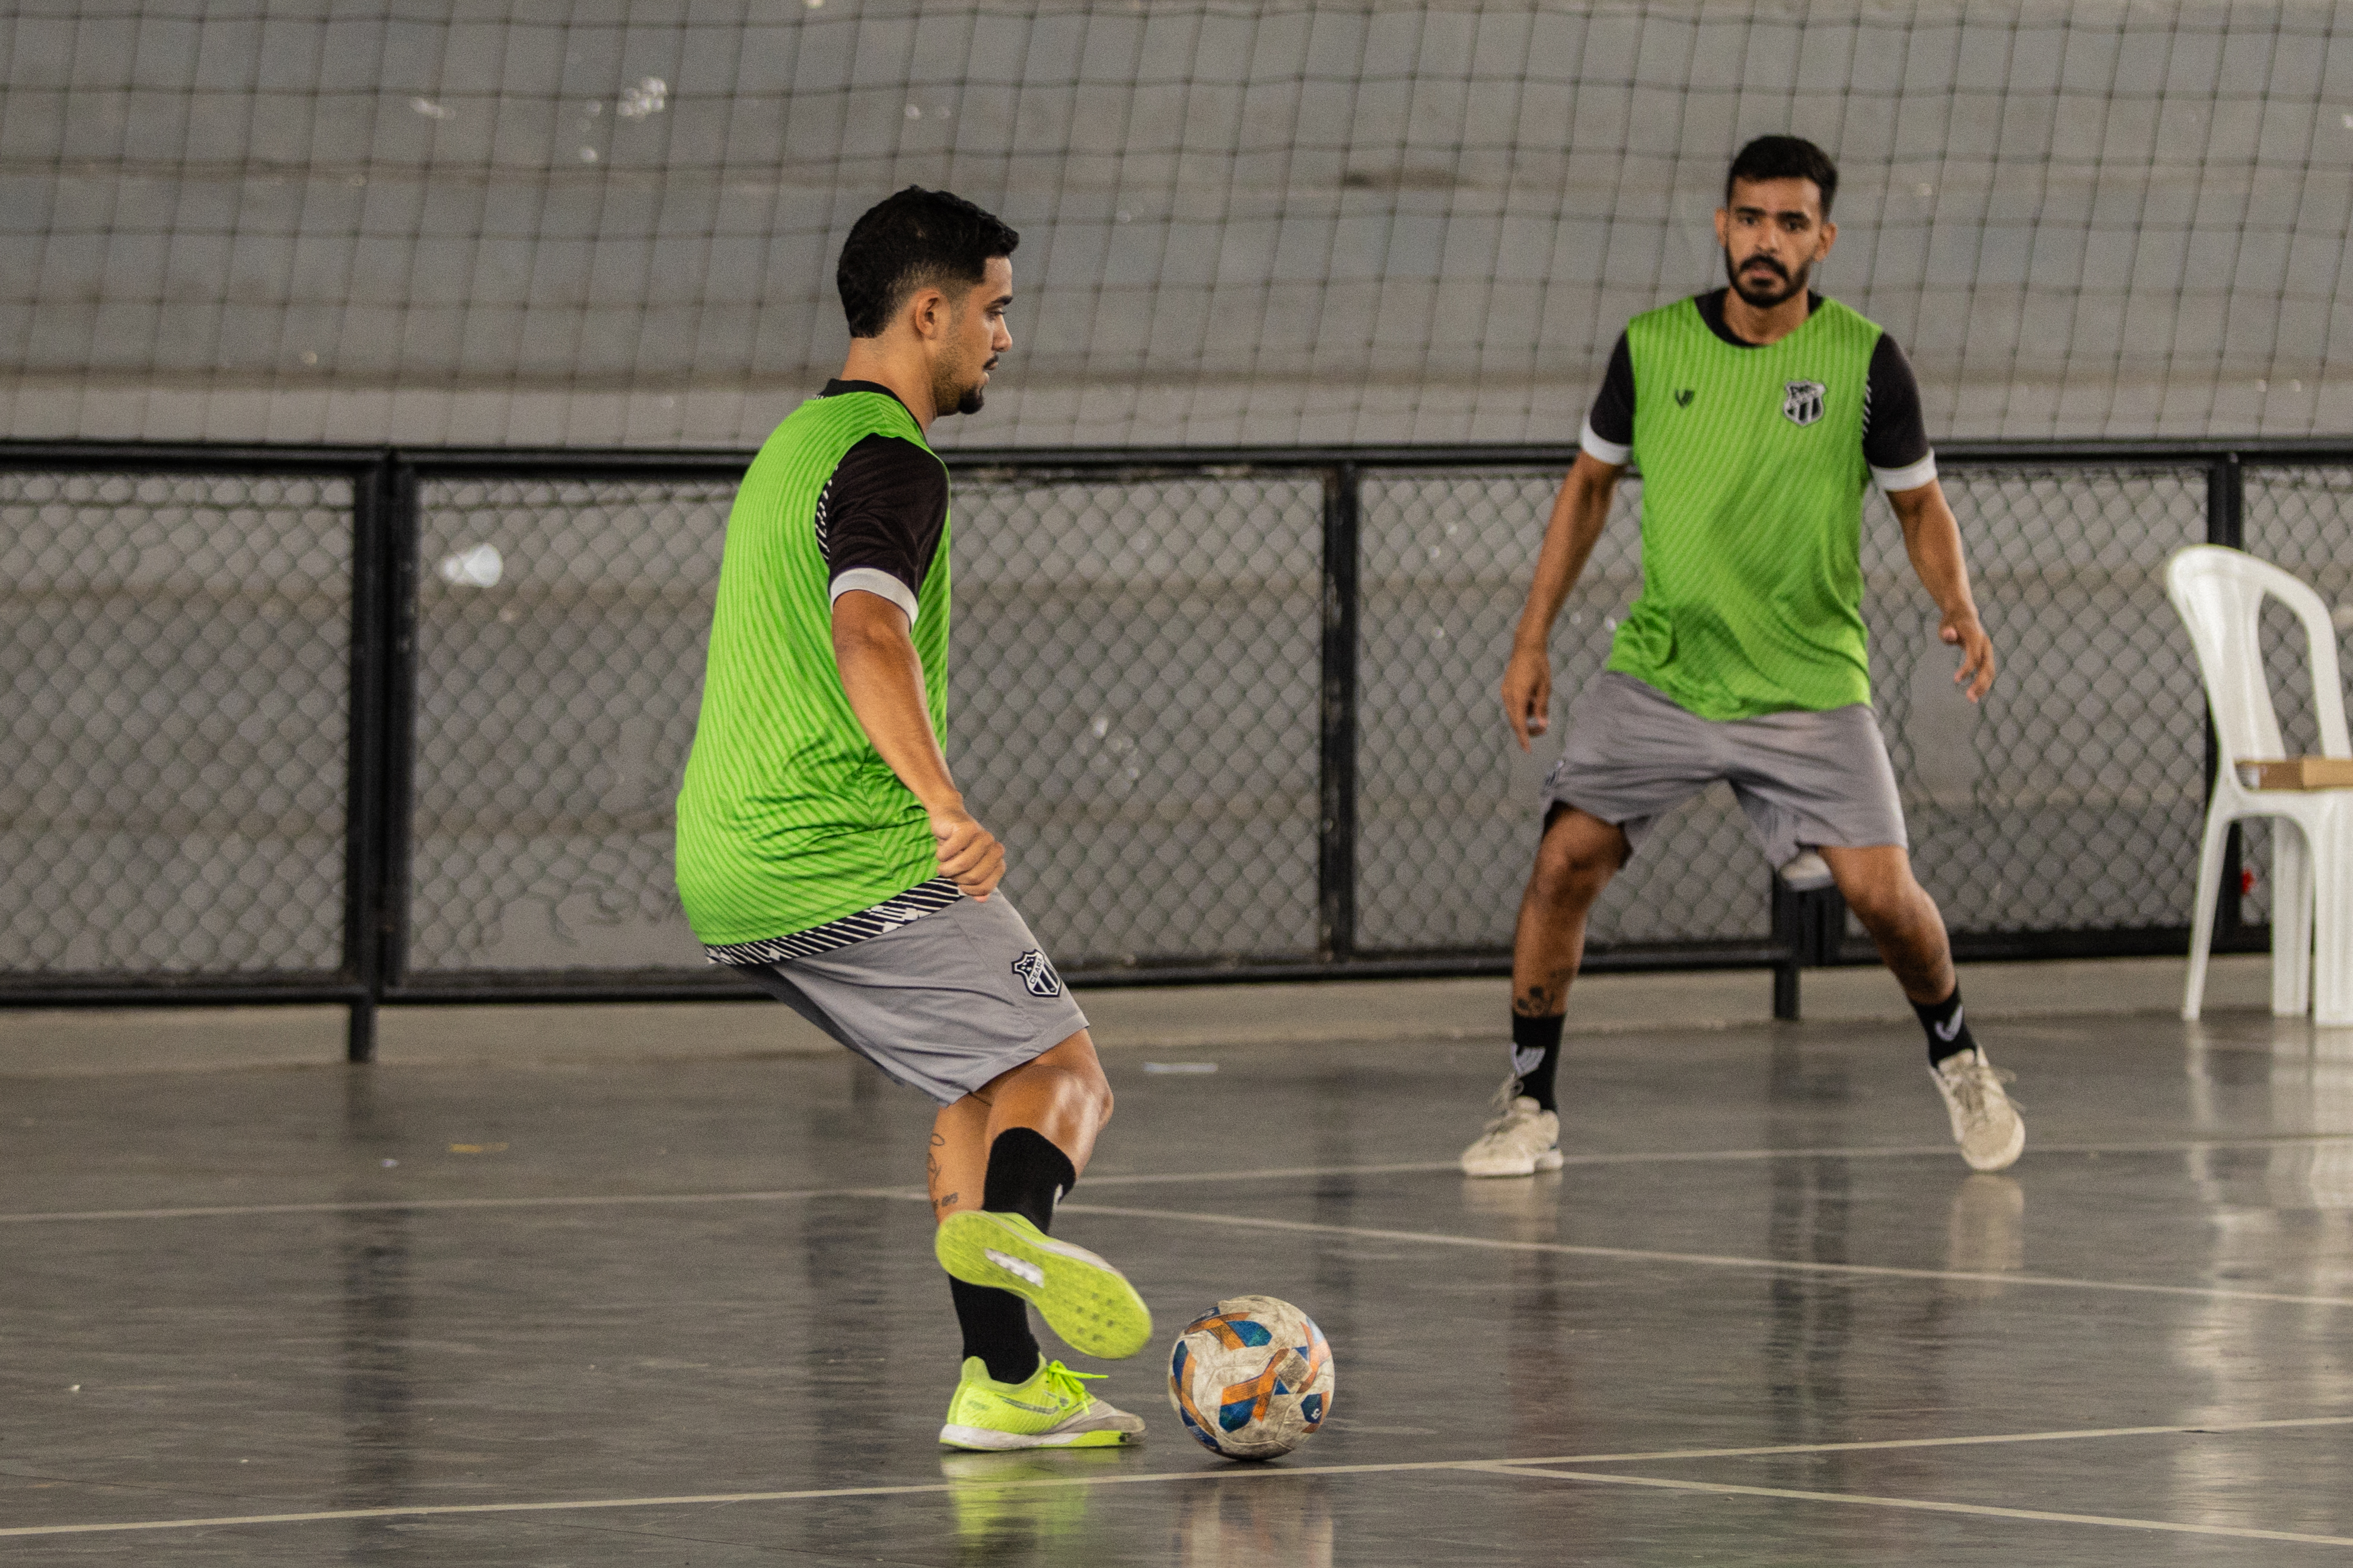 Futsal: Alvinegro trabalhou neste feriado de olho na semifinal do Campeonato Cearense